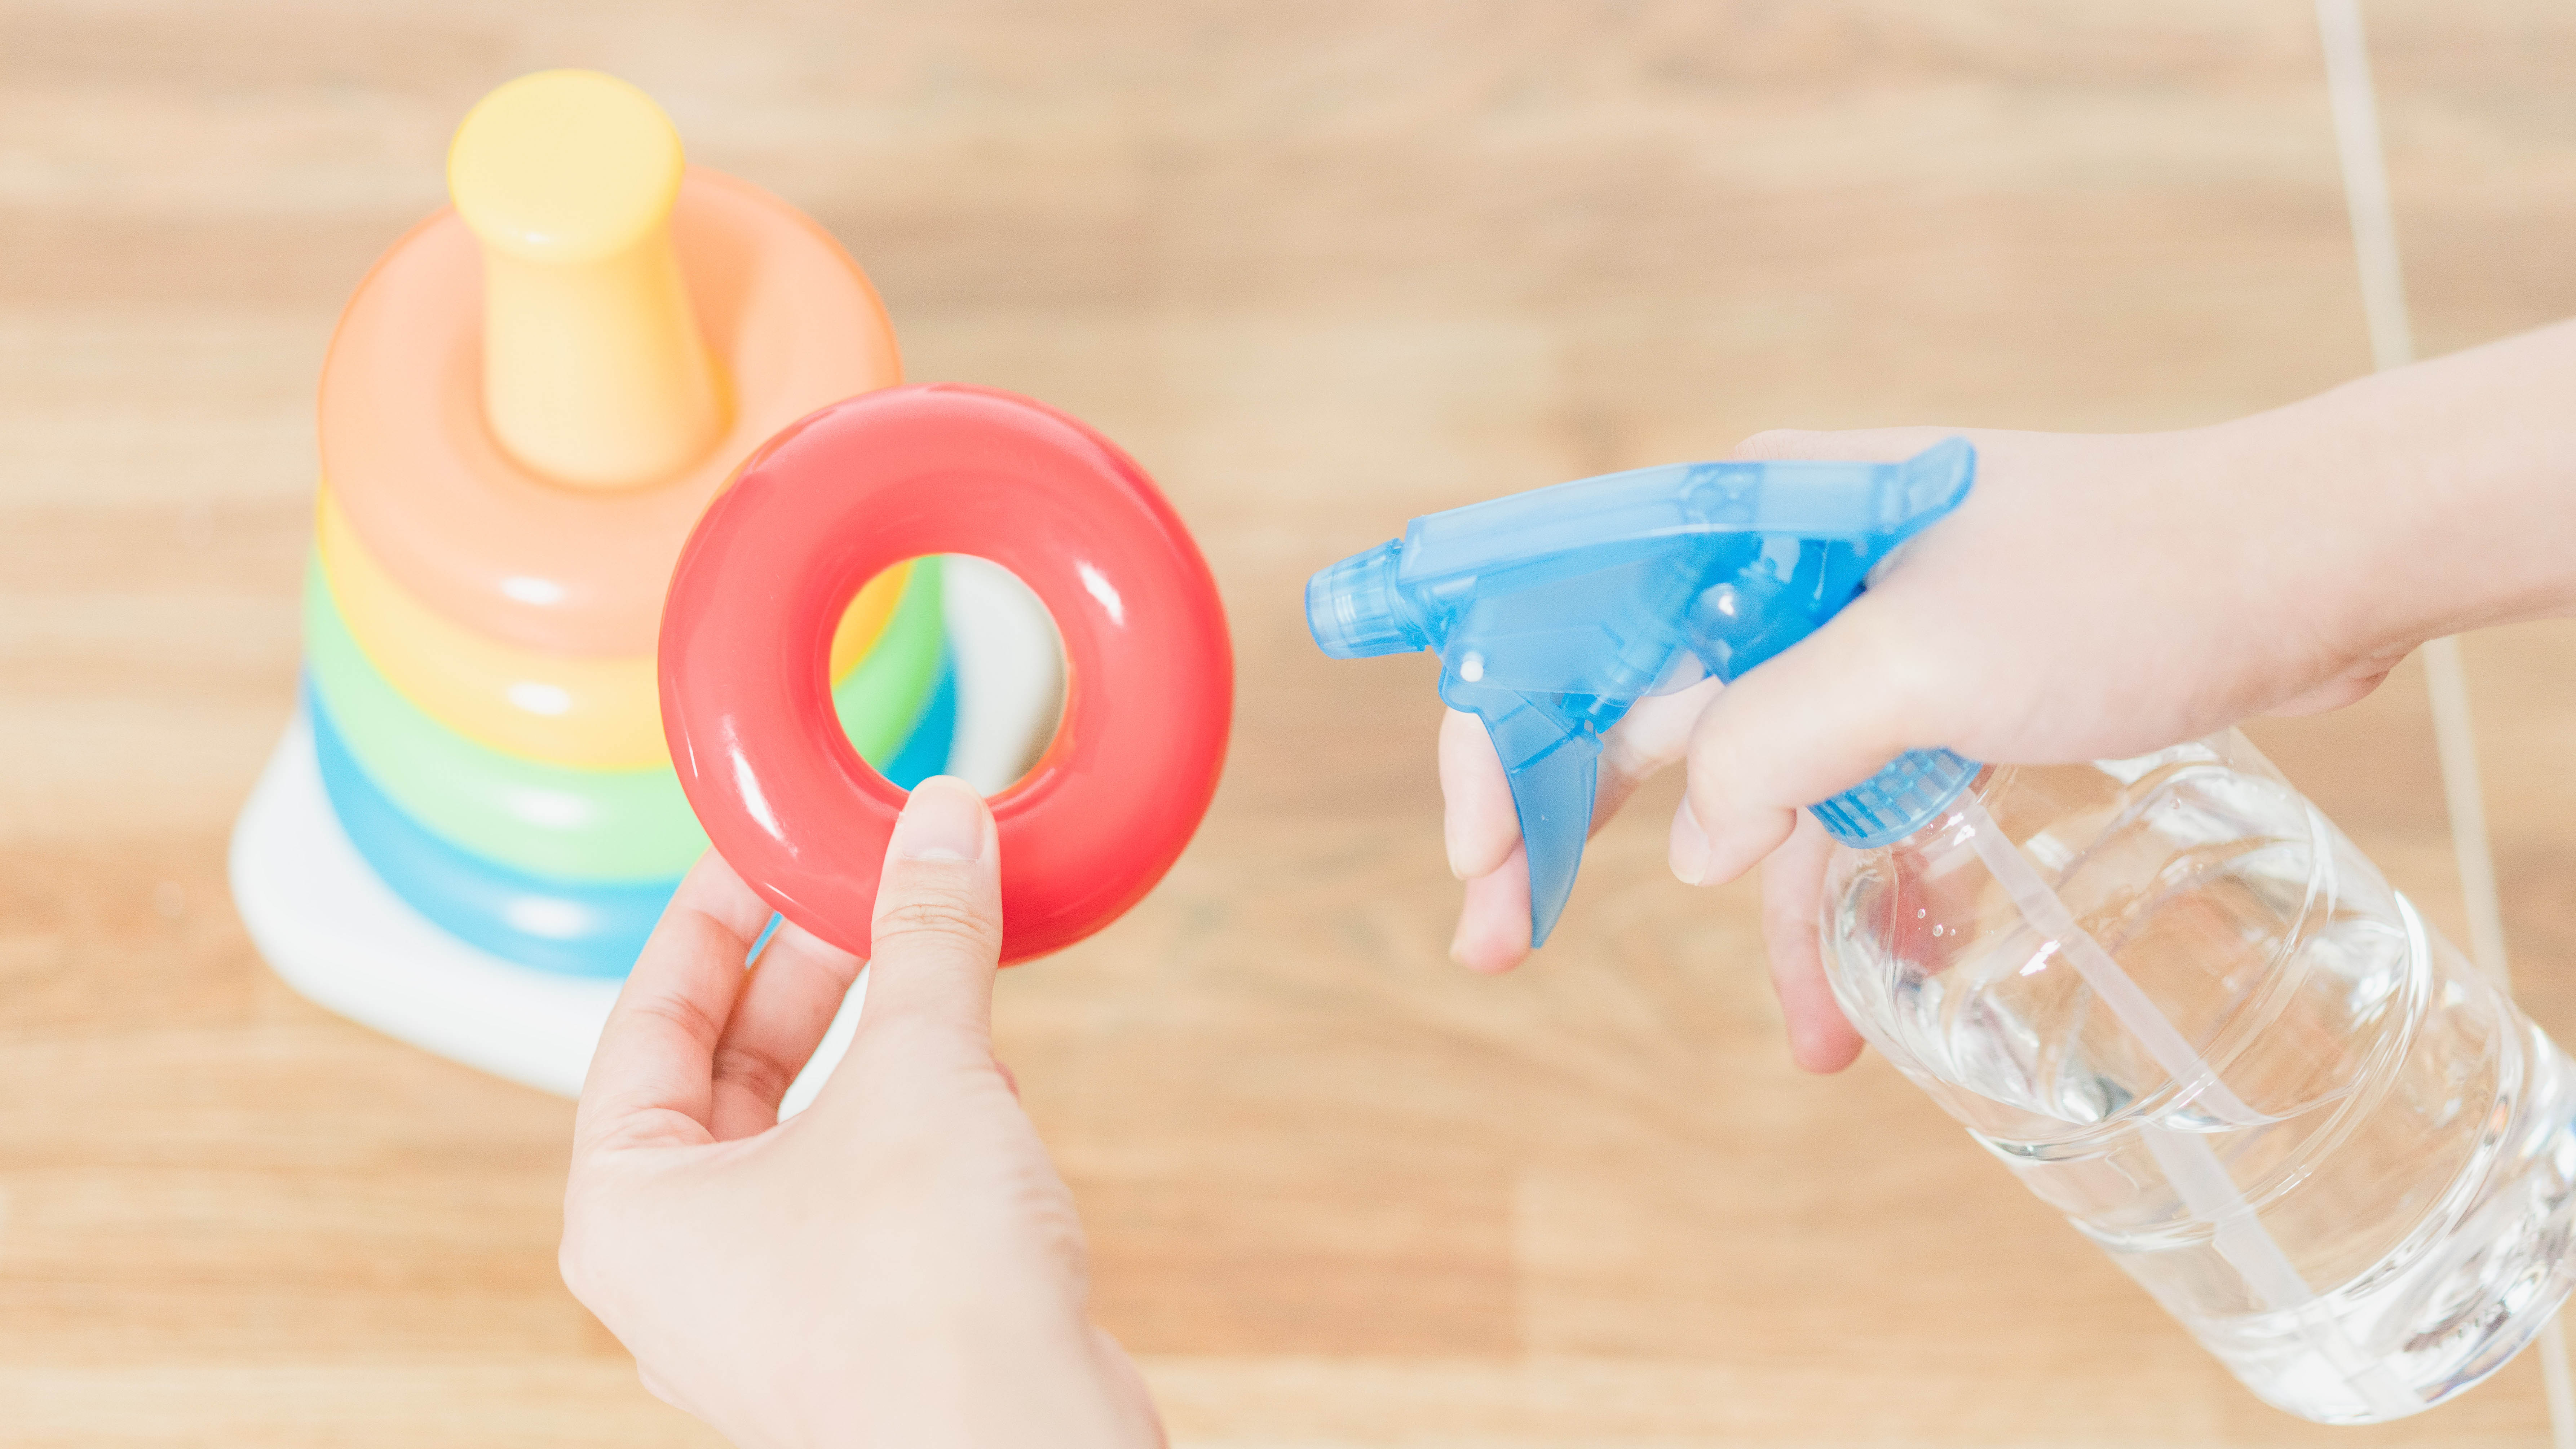 Опрыскивание пластиковой игрушки